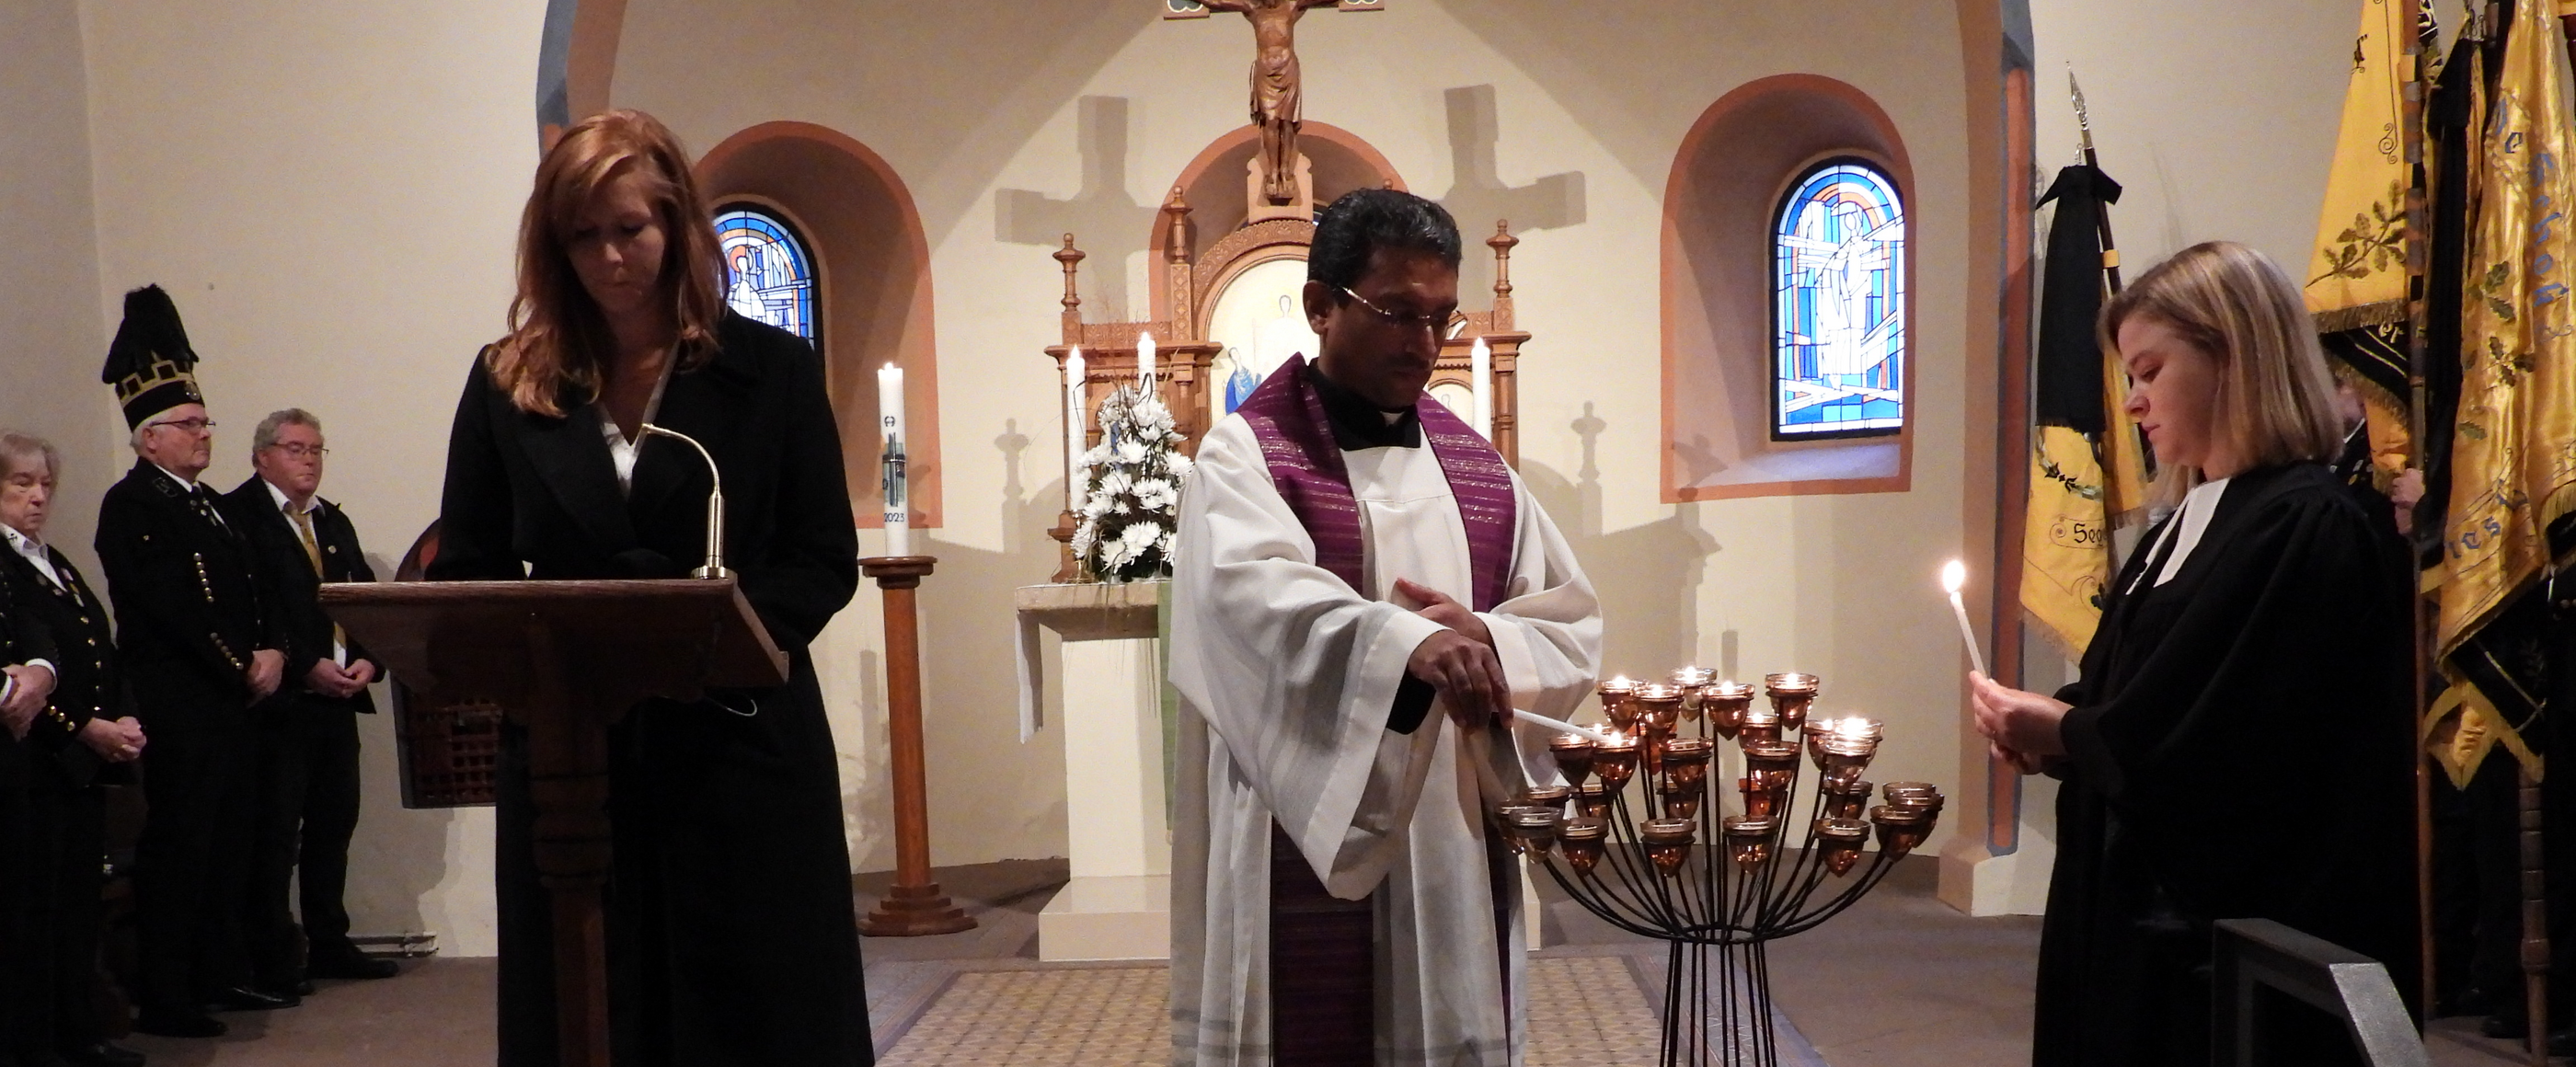 Eine Person steht an einem Pult in einer Kirche, daneben zündet ein Mann Kerzen an, daneben steht eine Frau und zündet ebenfalls Kerzen an.